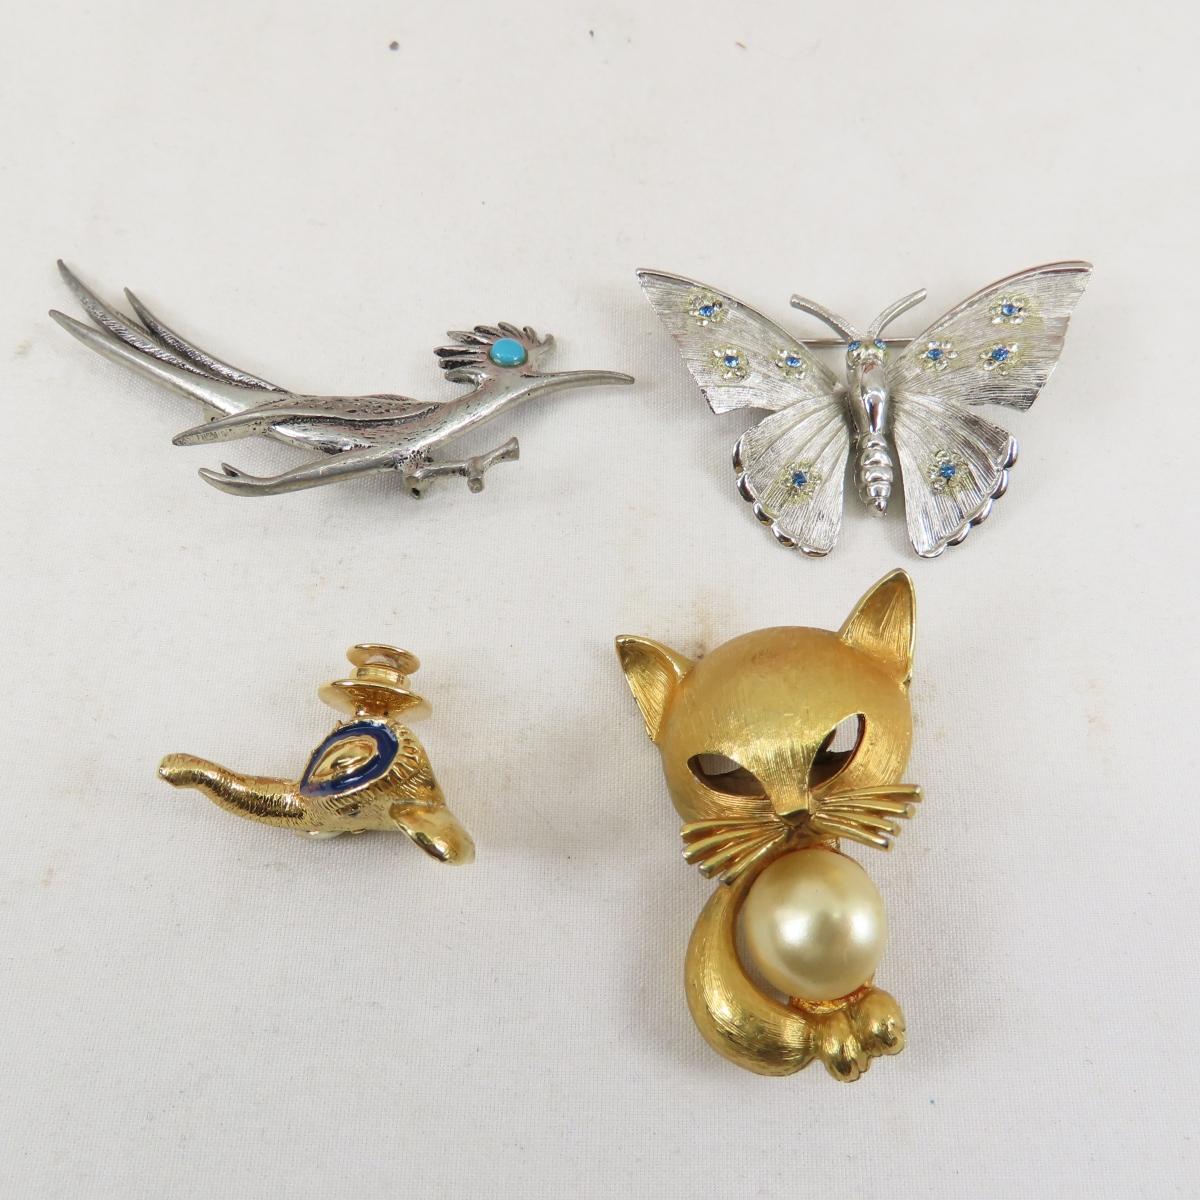 Ciner, BSK, J Ritter & Other Vintage Animal Pins